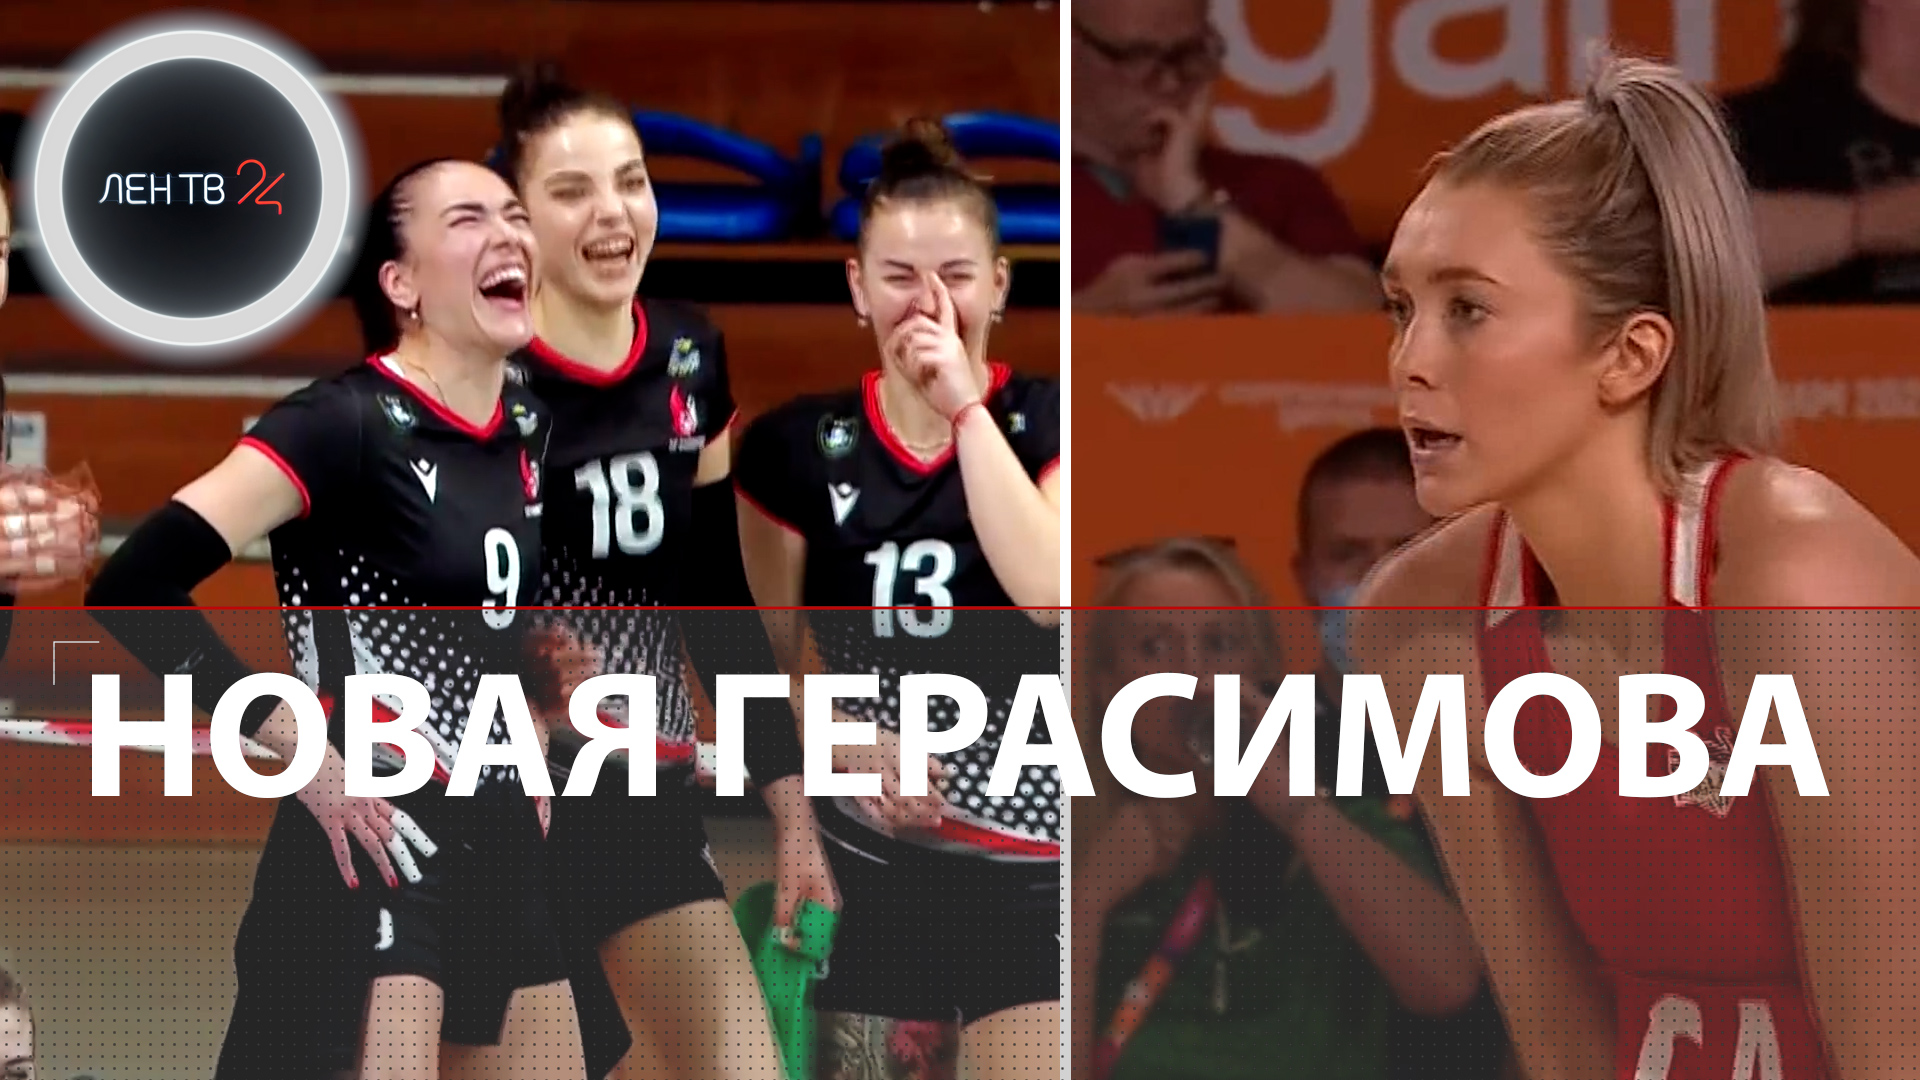 Новая Герасимова | Нетболистка Хелен Хаусби стала звездой TikTok, станцевав во время матча